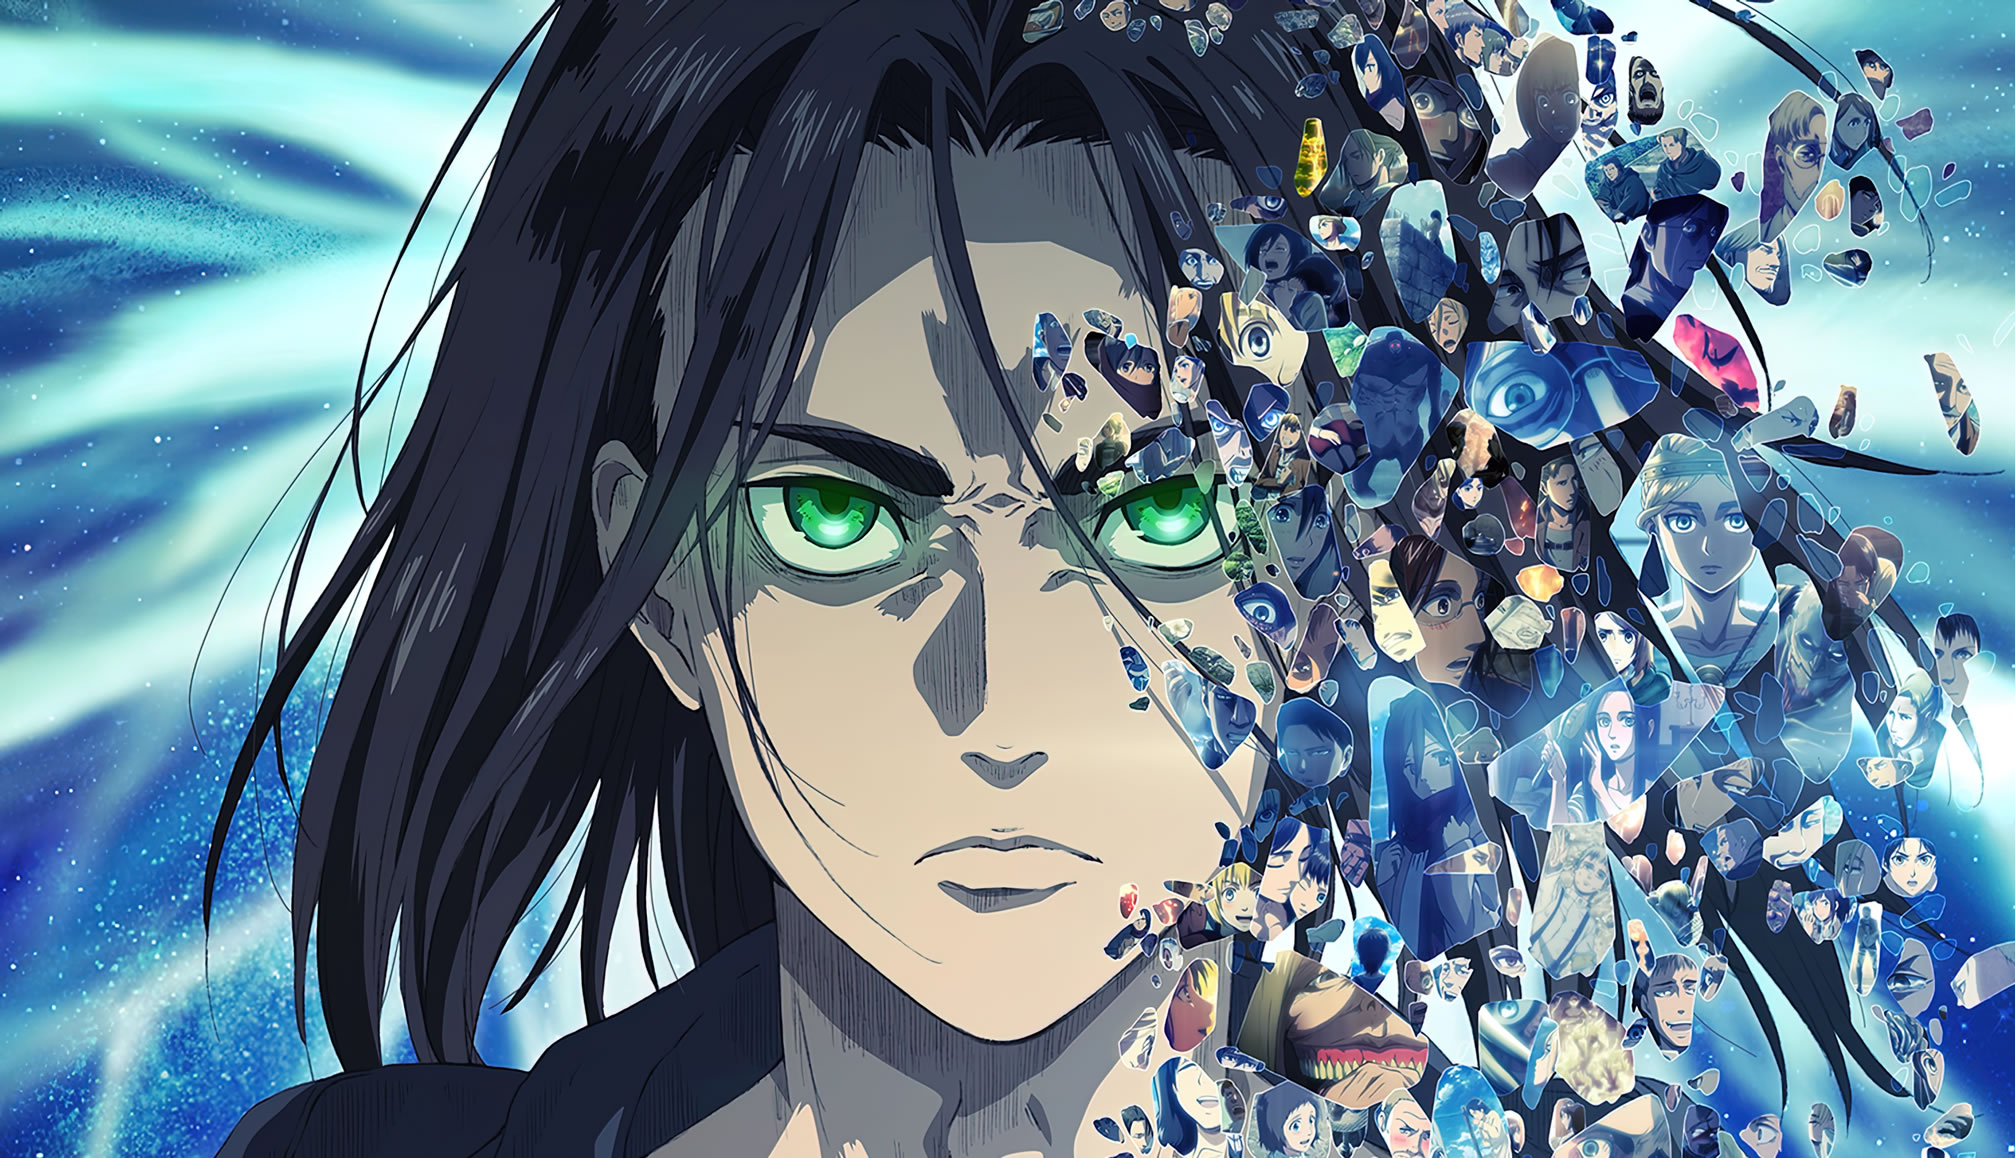 Animes In Japan 🎄 on X: URGENTE🚨 A última parte da temporada final de  Shingeki no Kyojin será dividido em duas partes! 🗓️A parte 1 será lançado  dia 3 de março de